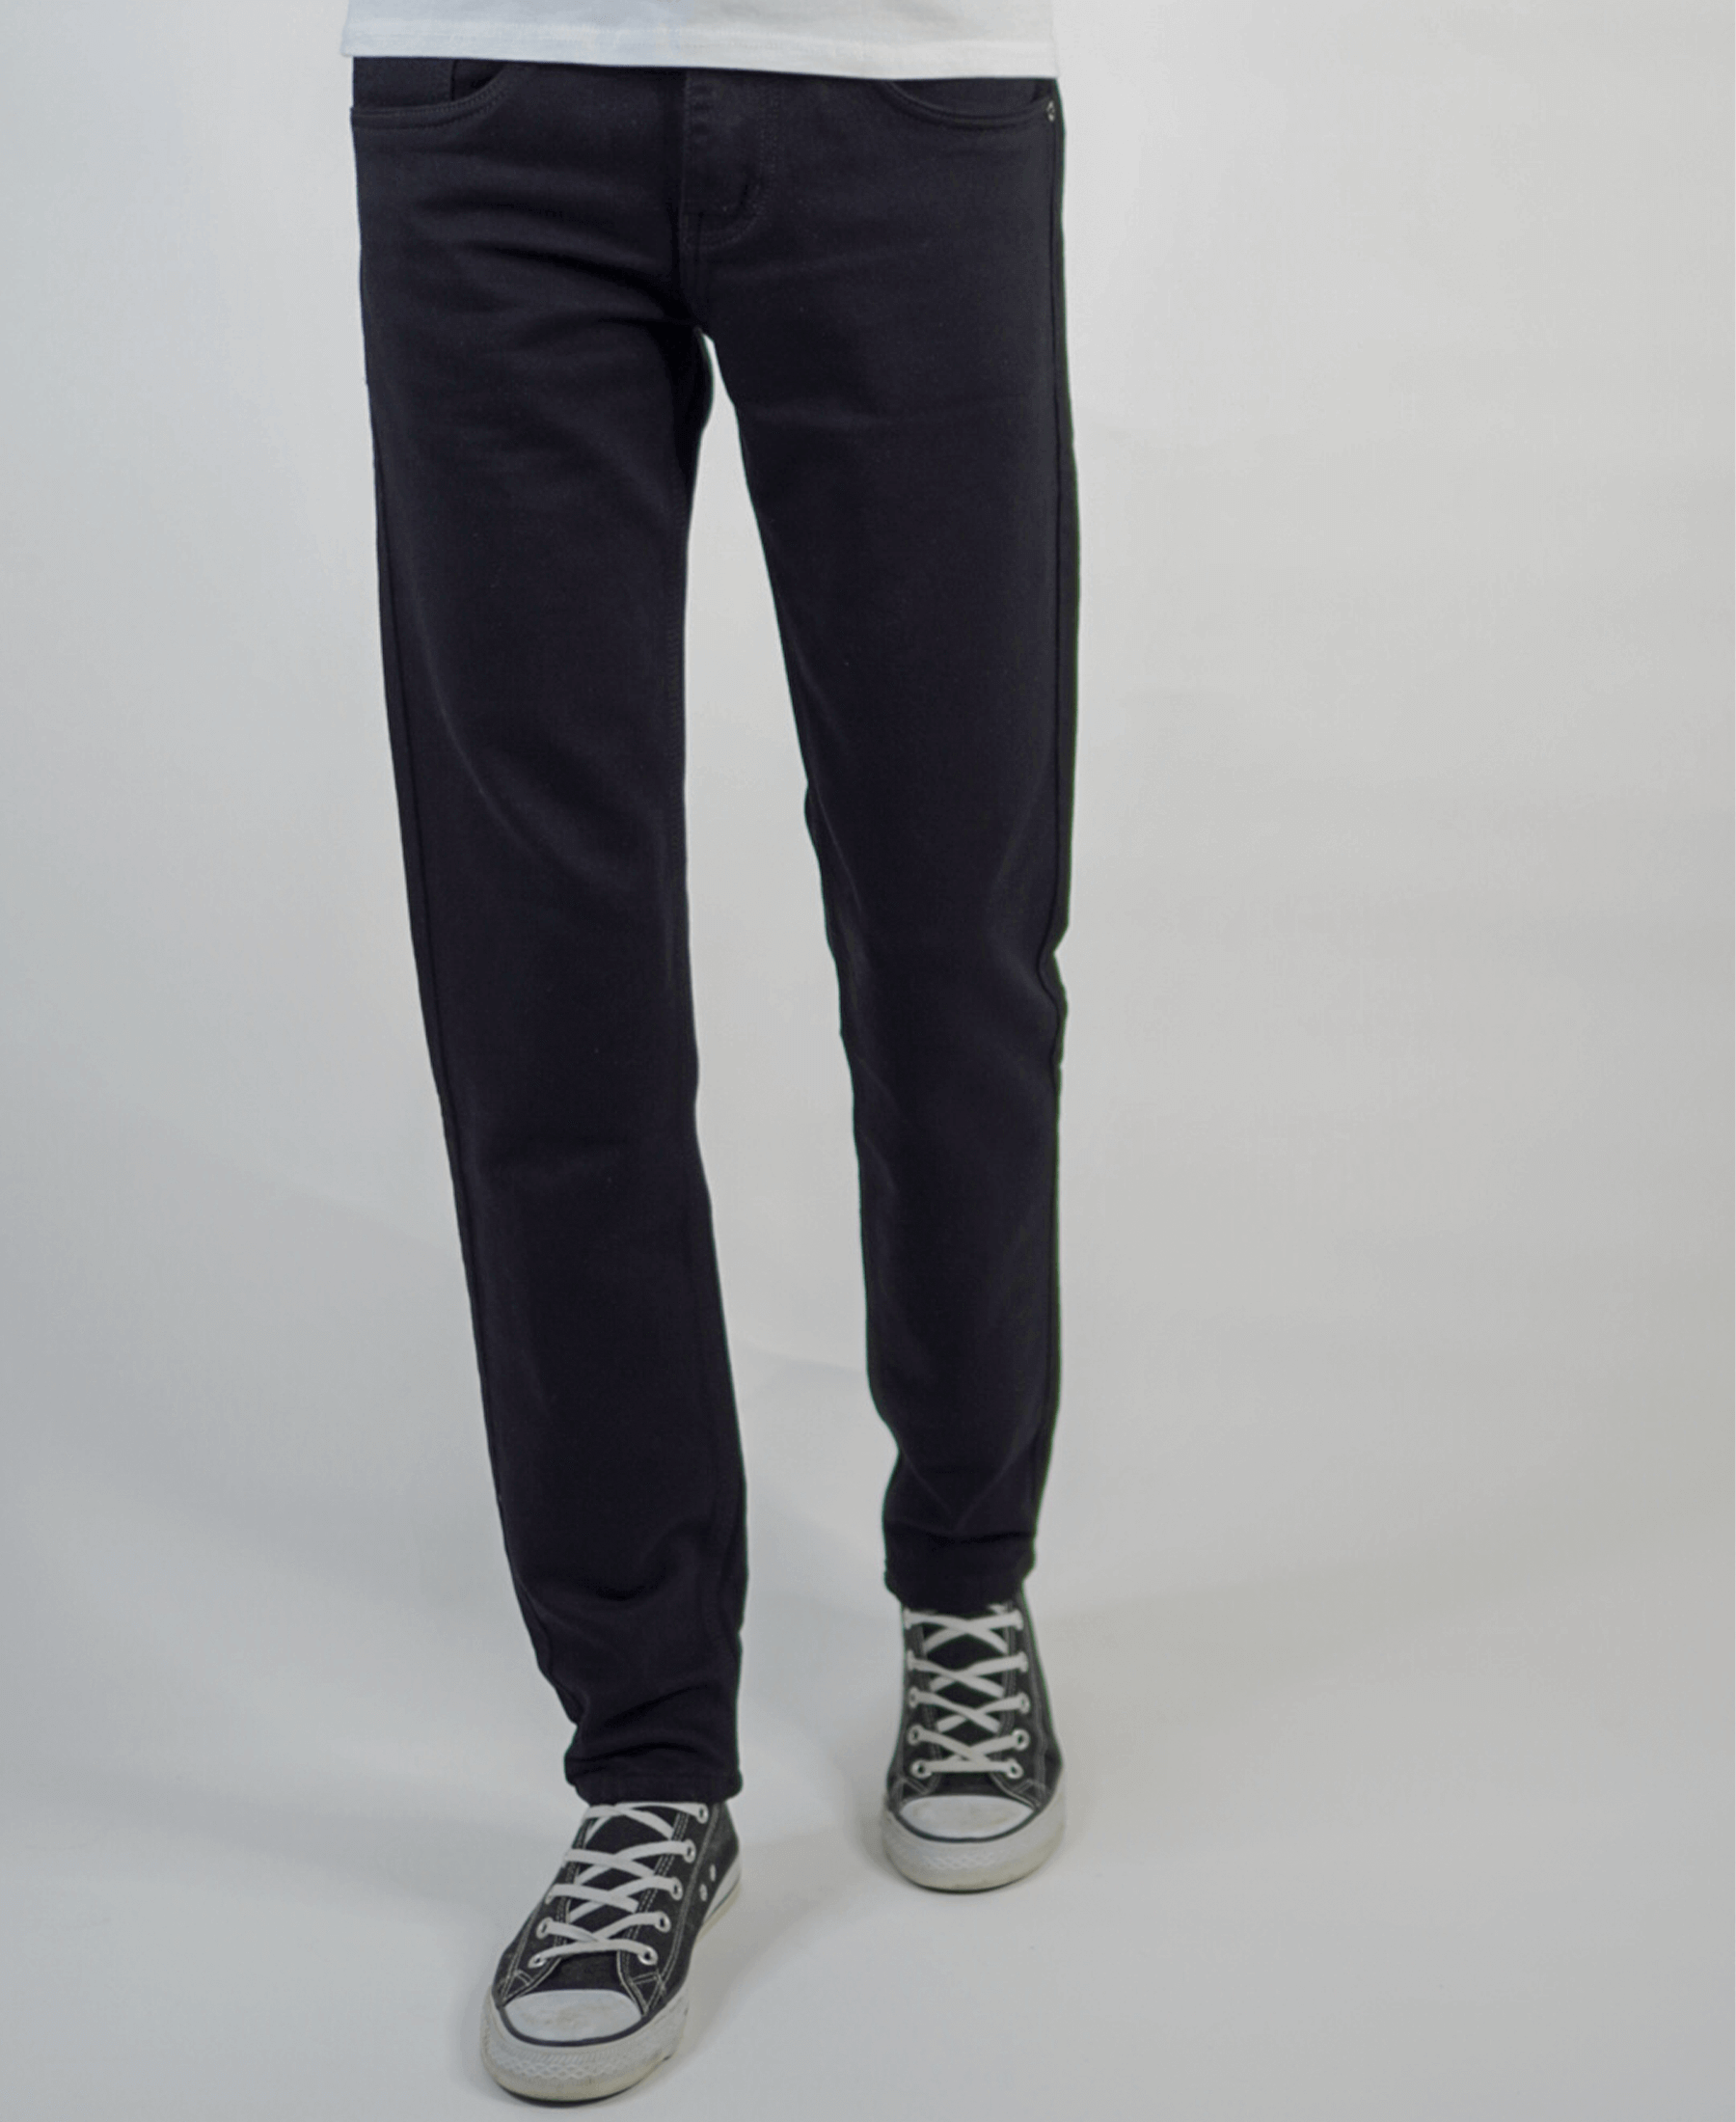 Black Basic Denim Jeans - istabraq.in